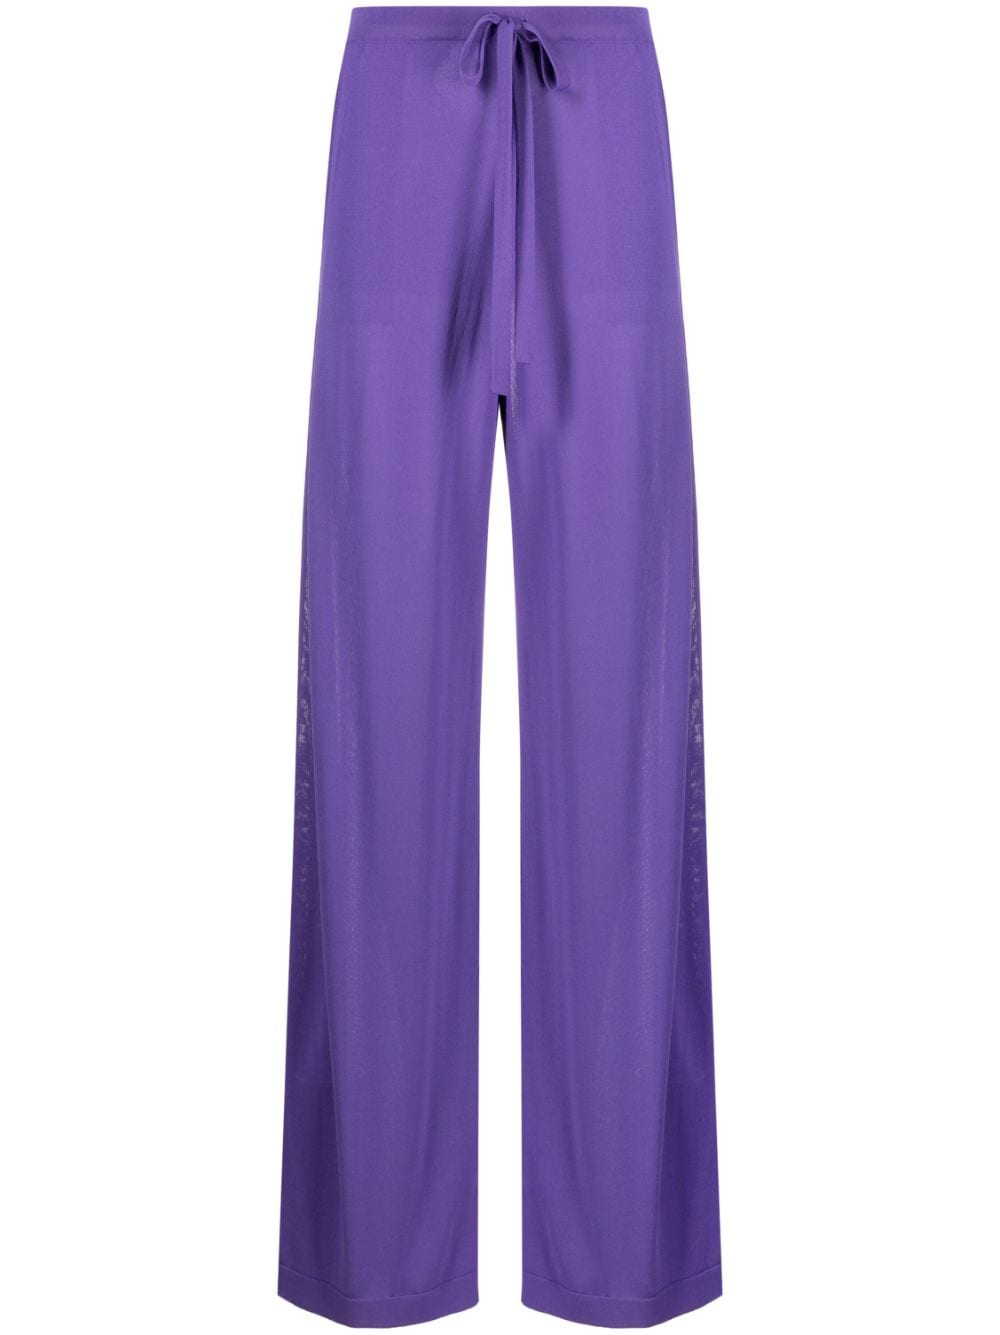 P.a.r.o.s.h 针织阔腿裤 In Purple